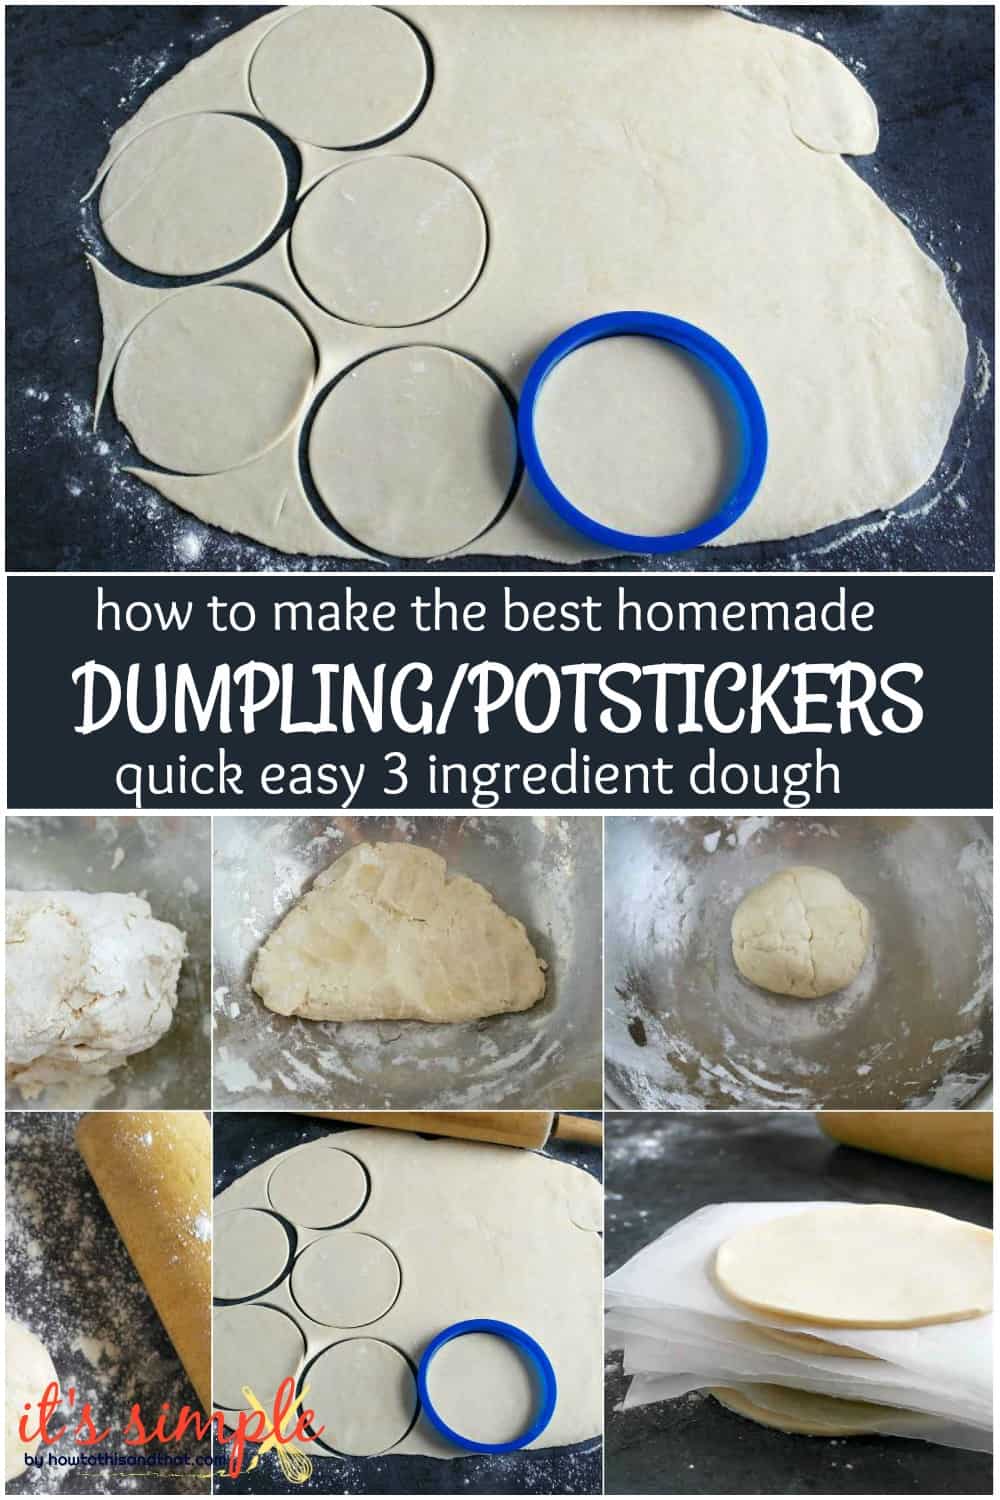 Asian dumpling/ potsticker dough homemade 